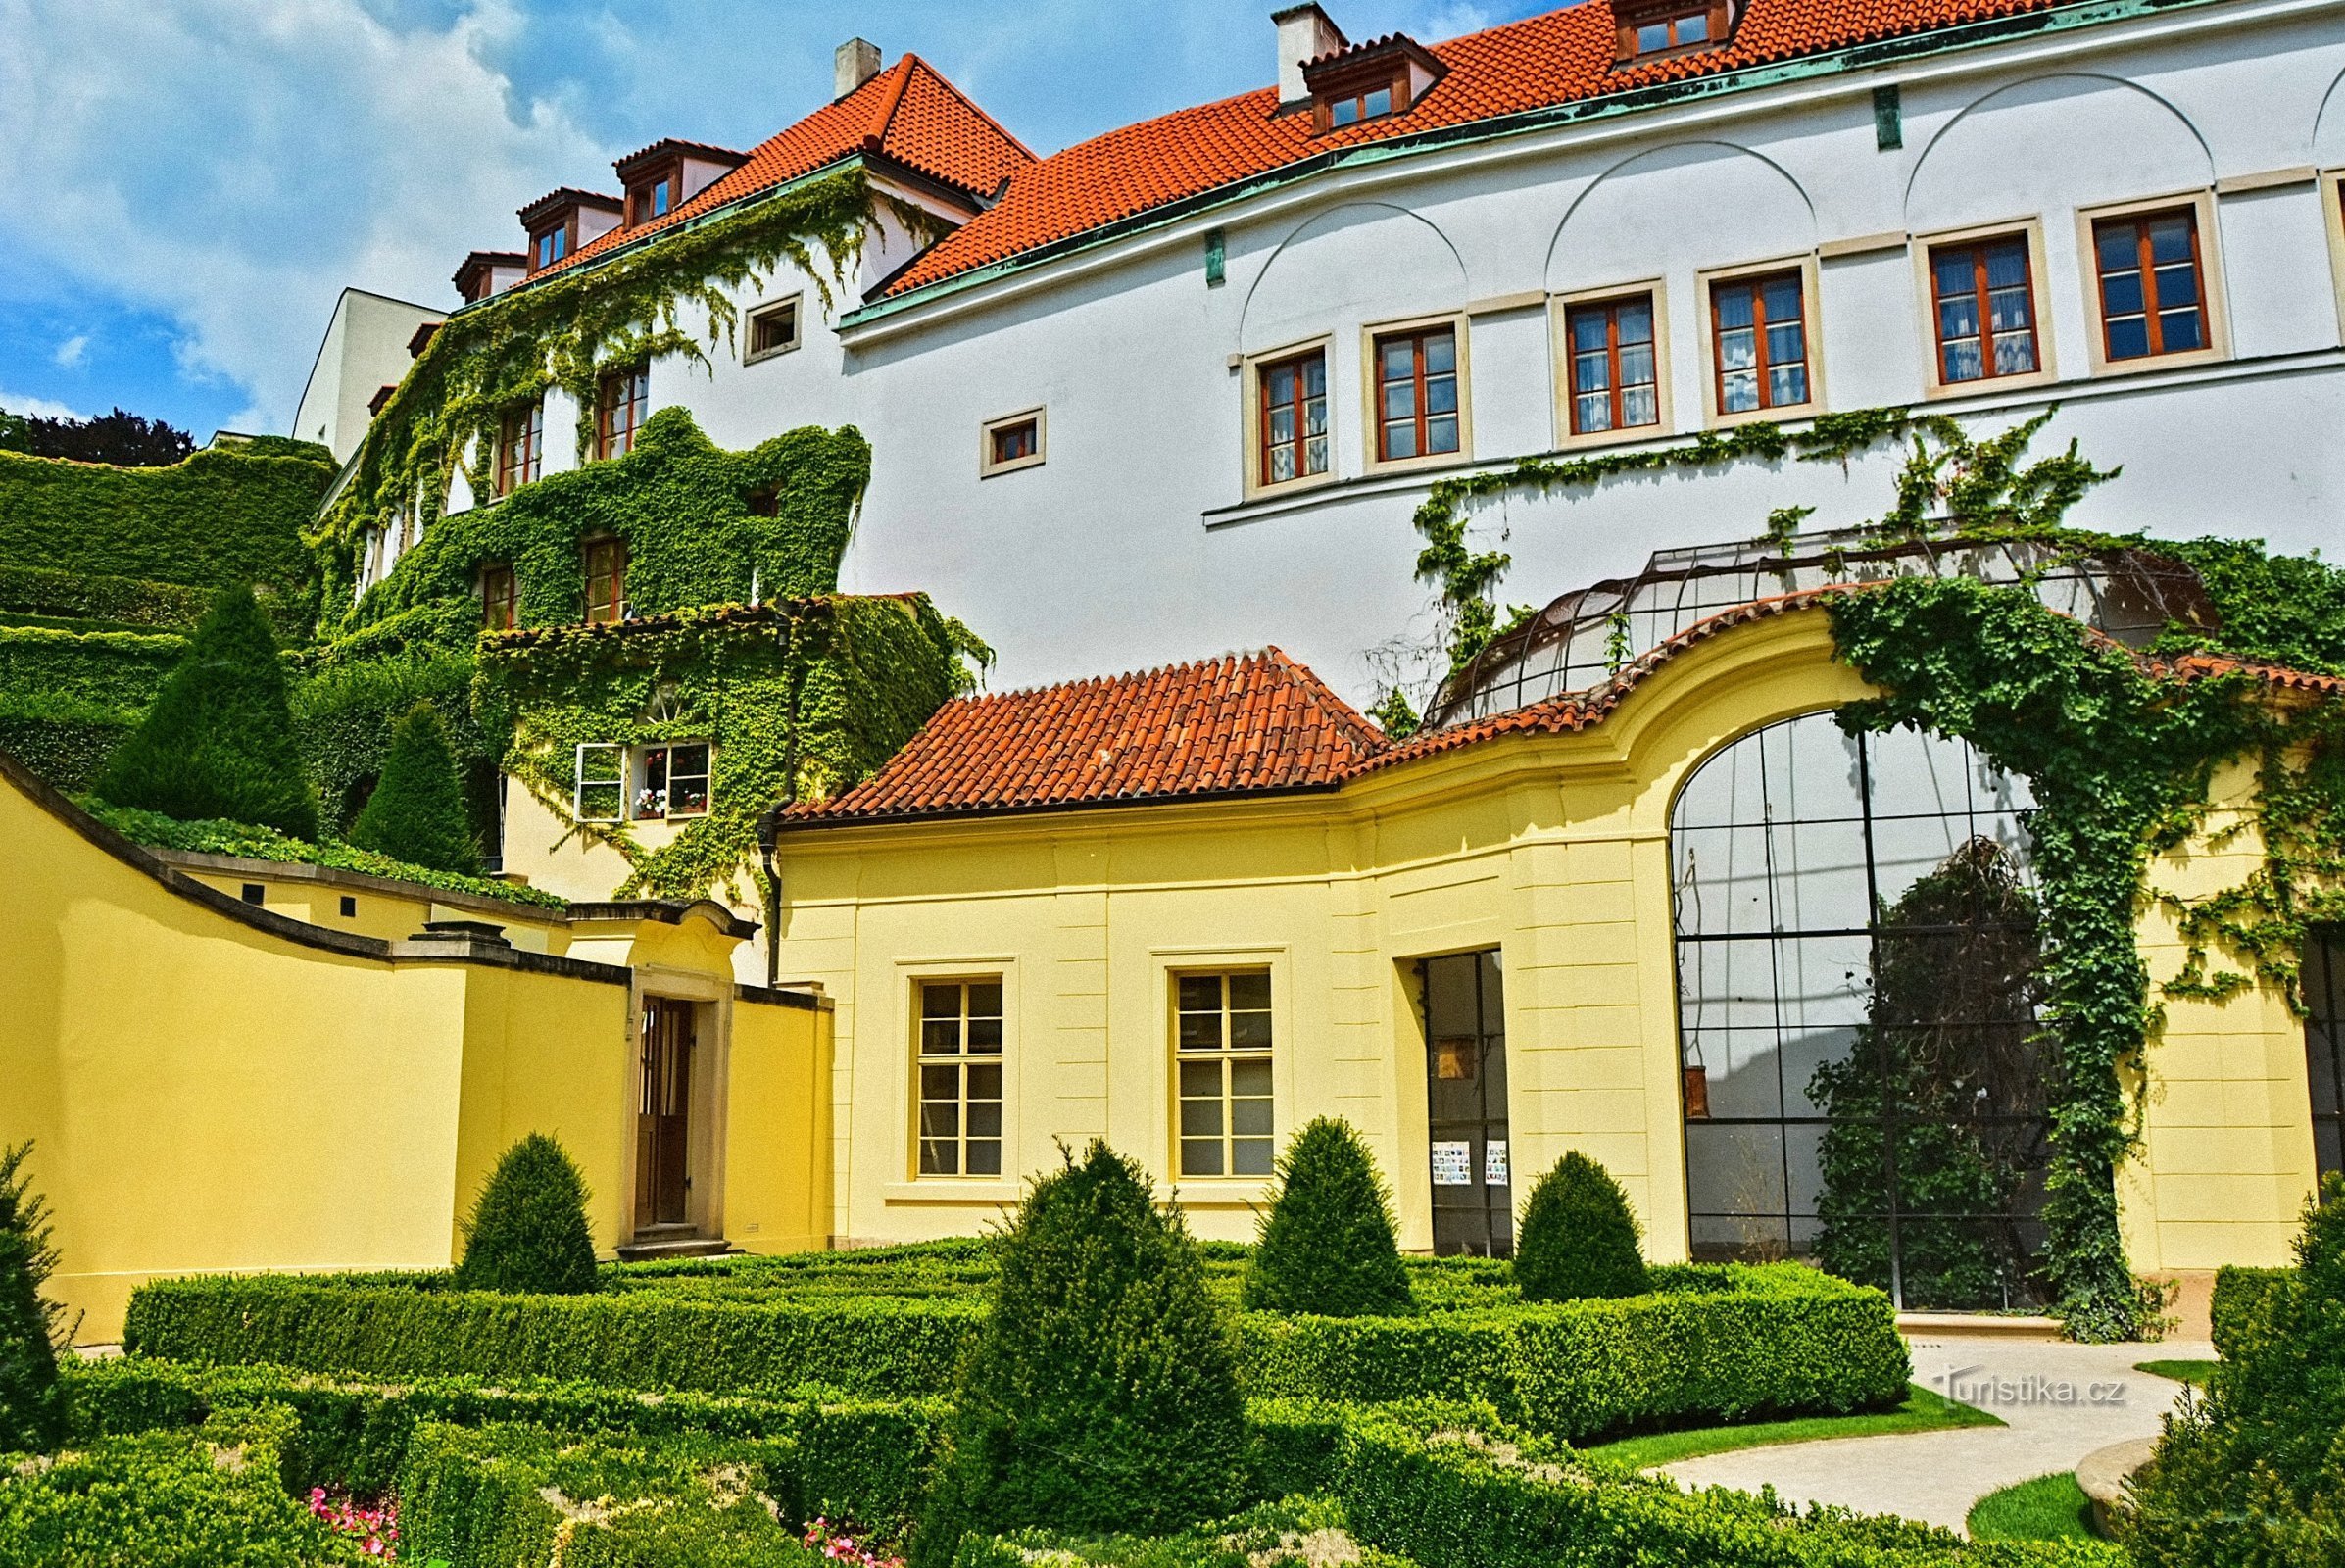 Grădina Vrtbovská cu vedere frumoasă la Praga